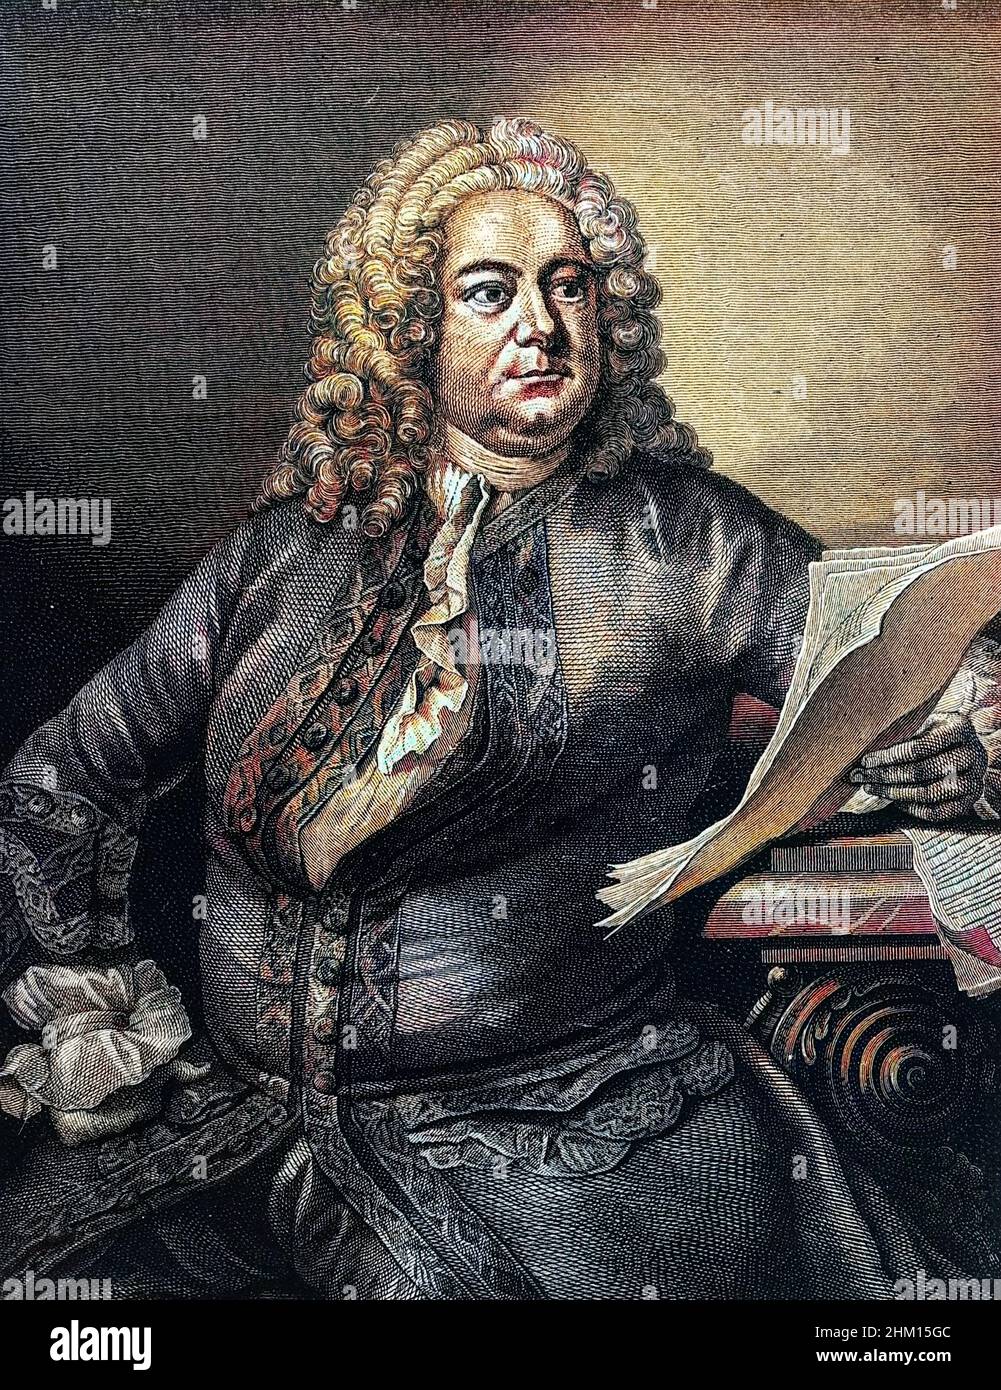 Portrait de George Frederick Handel (Georg Friedrich Haendel, 1685-1759) compositeur baroque germano-britannique Banque D'Images